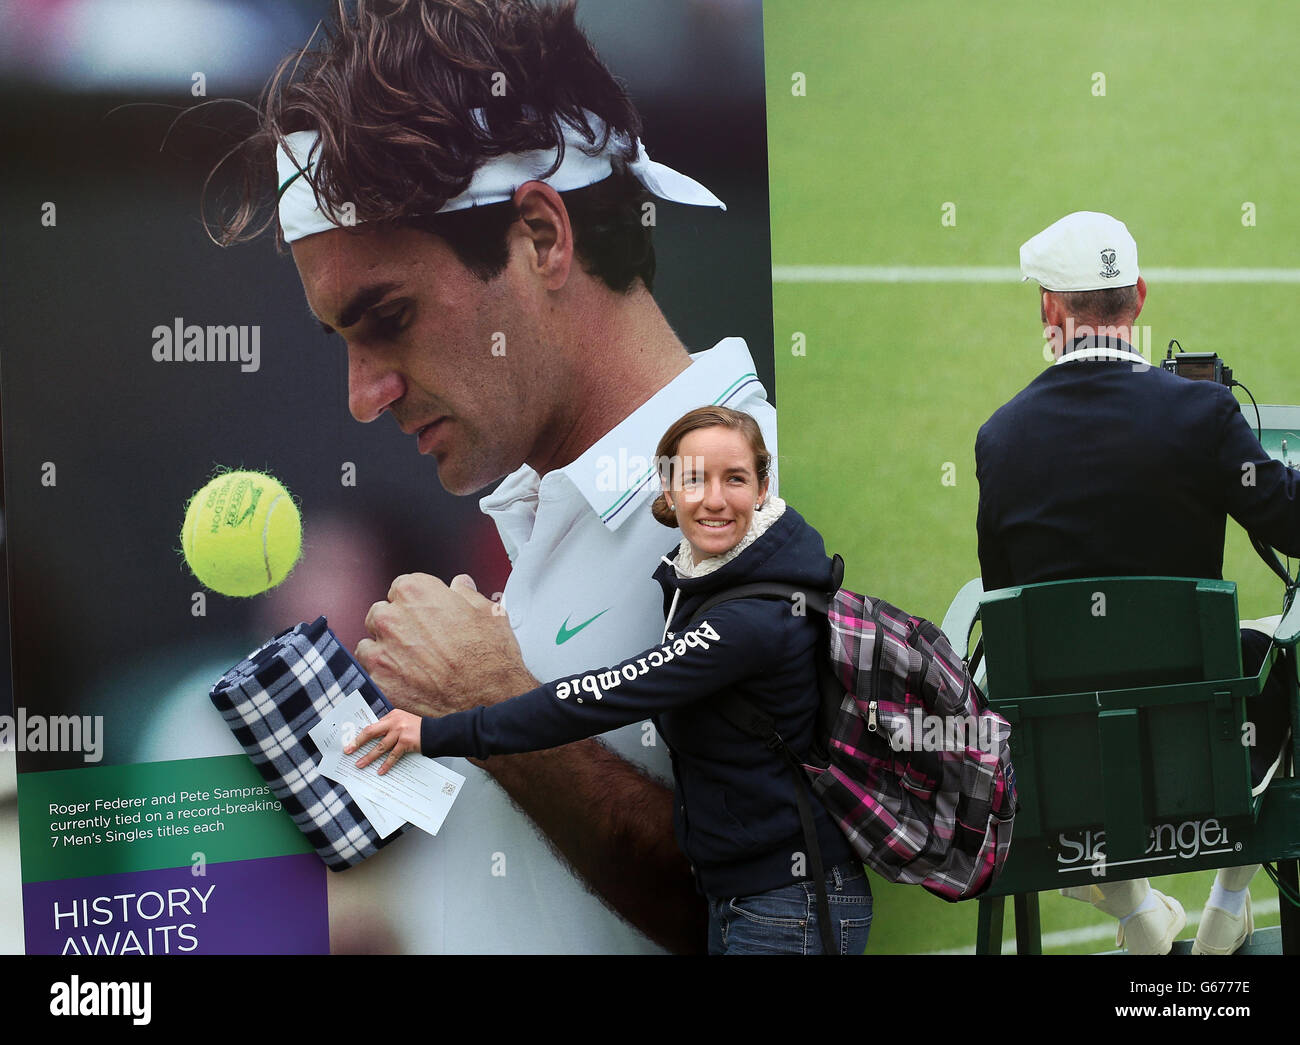 Adriana Canapa, de México, abraza un cartel de Roger Federer mientras  espera en la cola durante el tercer día de los campeonatos de Wimbledon en  el All England Lawn Tennis and Croquet